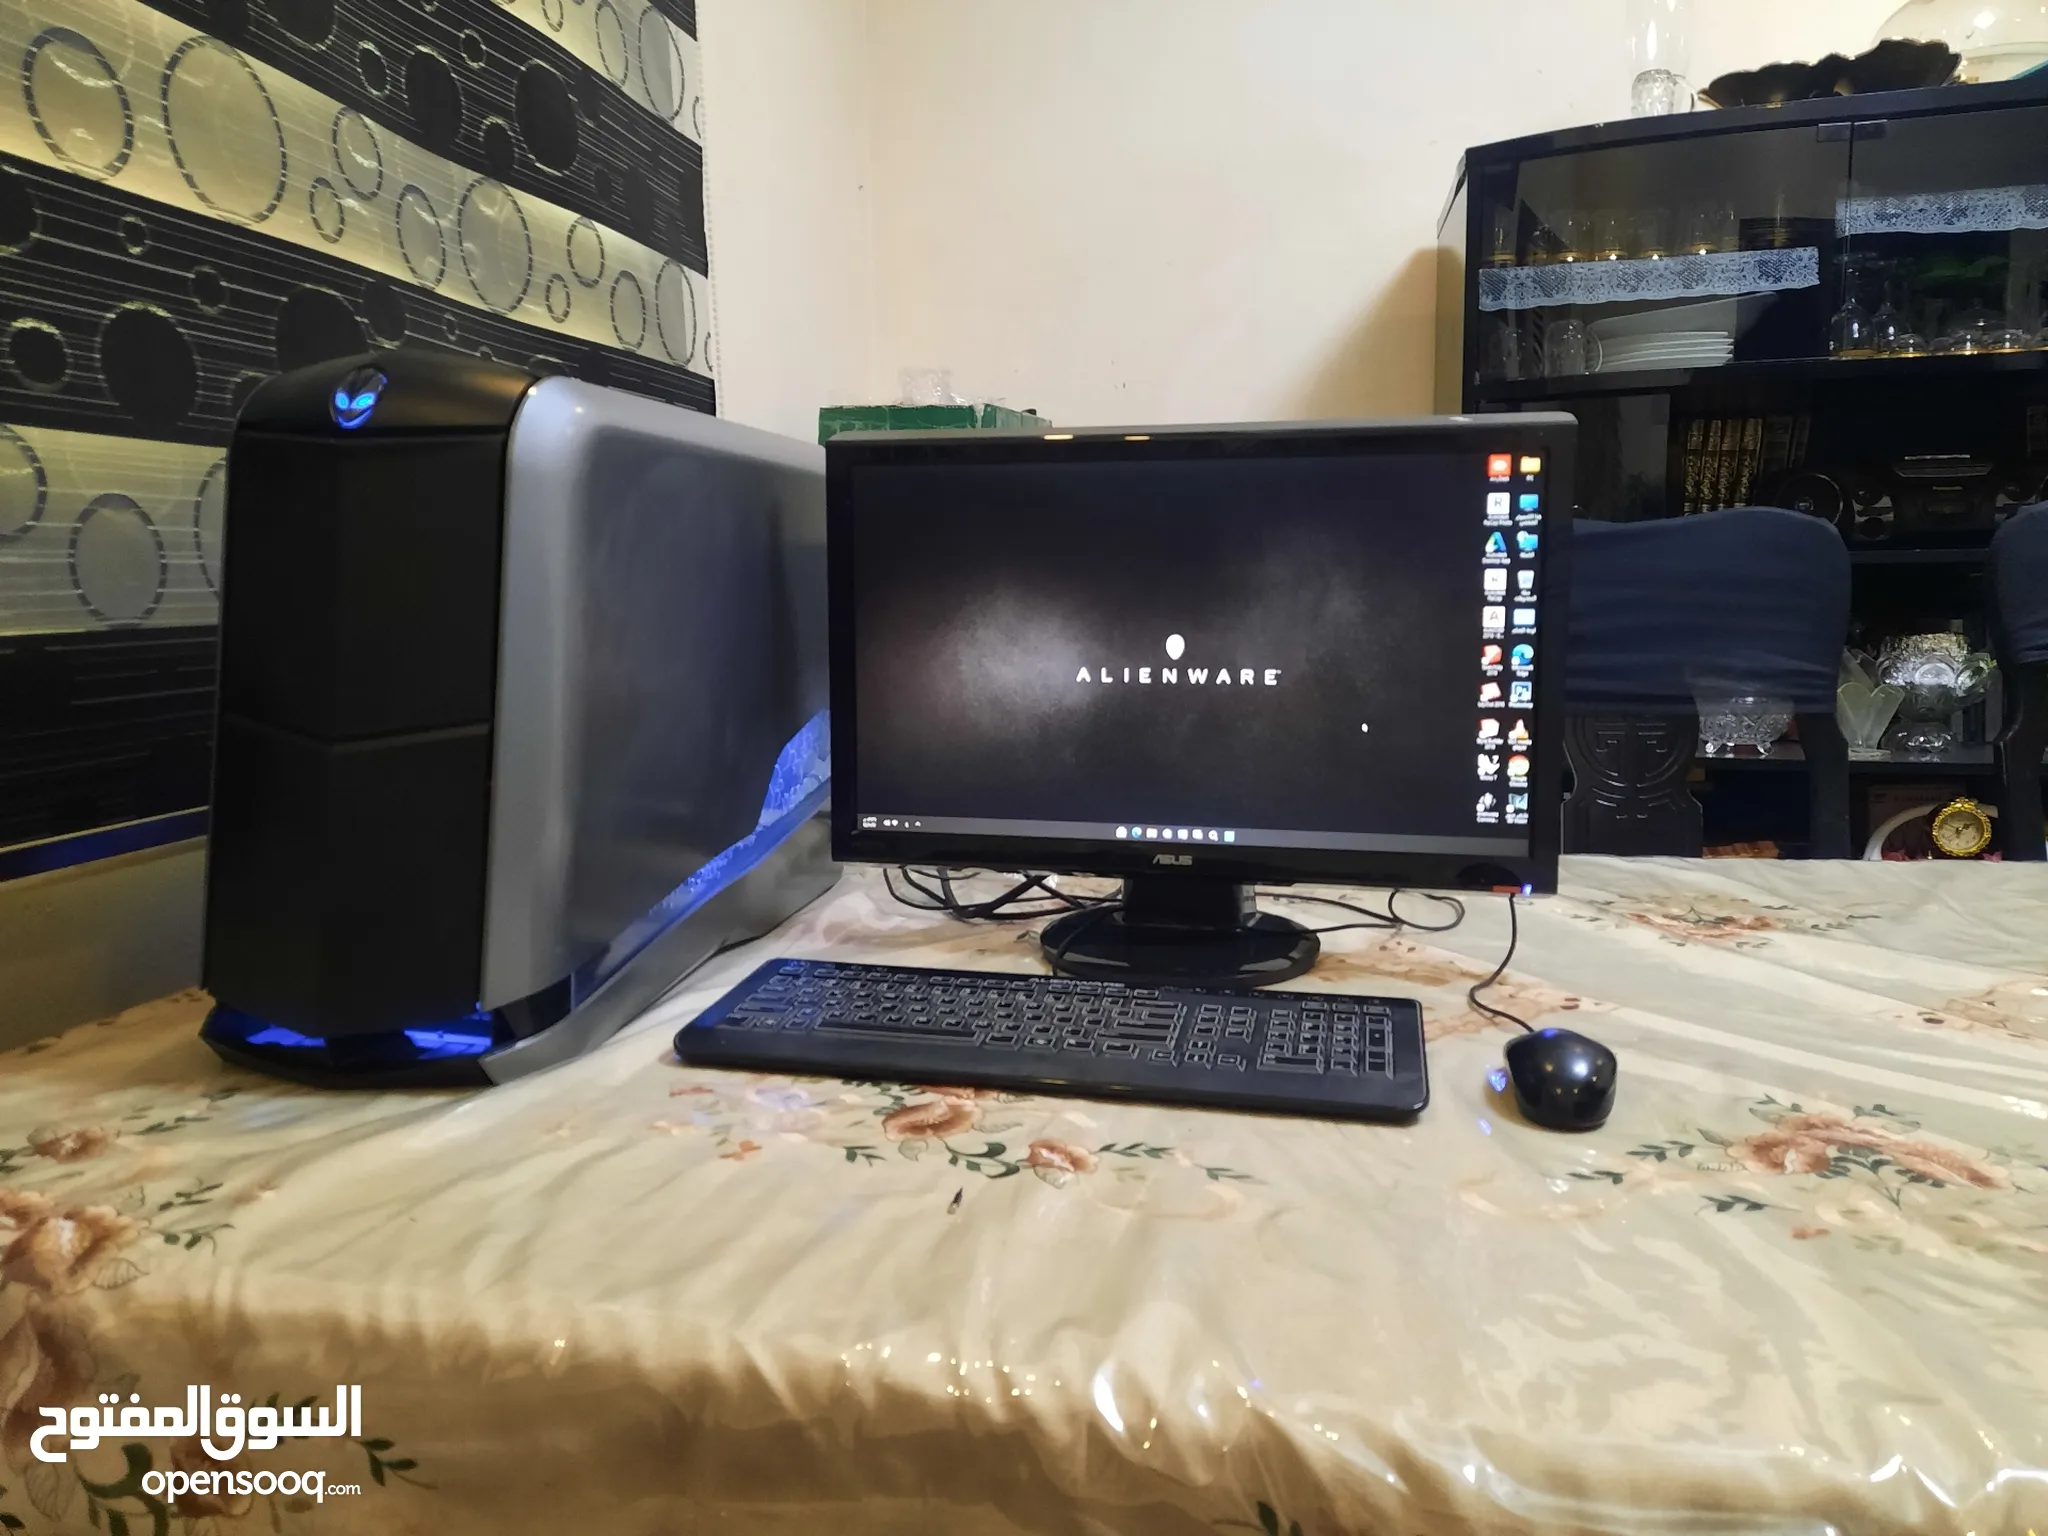 كمبيوتر للبيع في السعودية : كمبيوتر مكتب : افضل سعر | السوق المفتوح